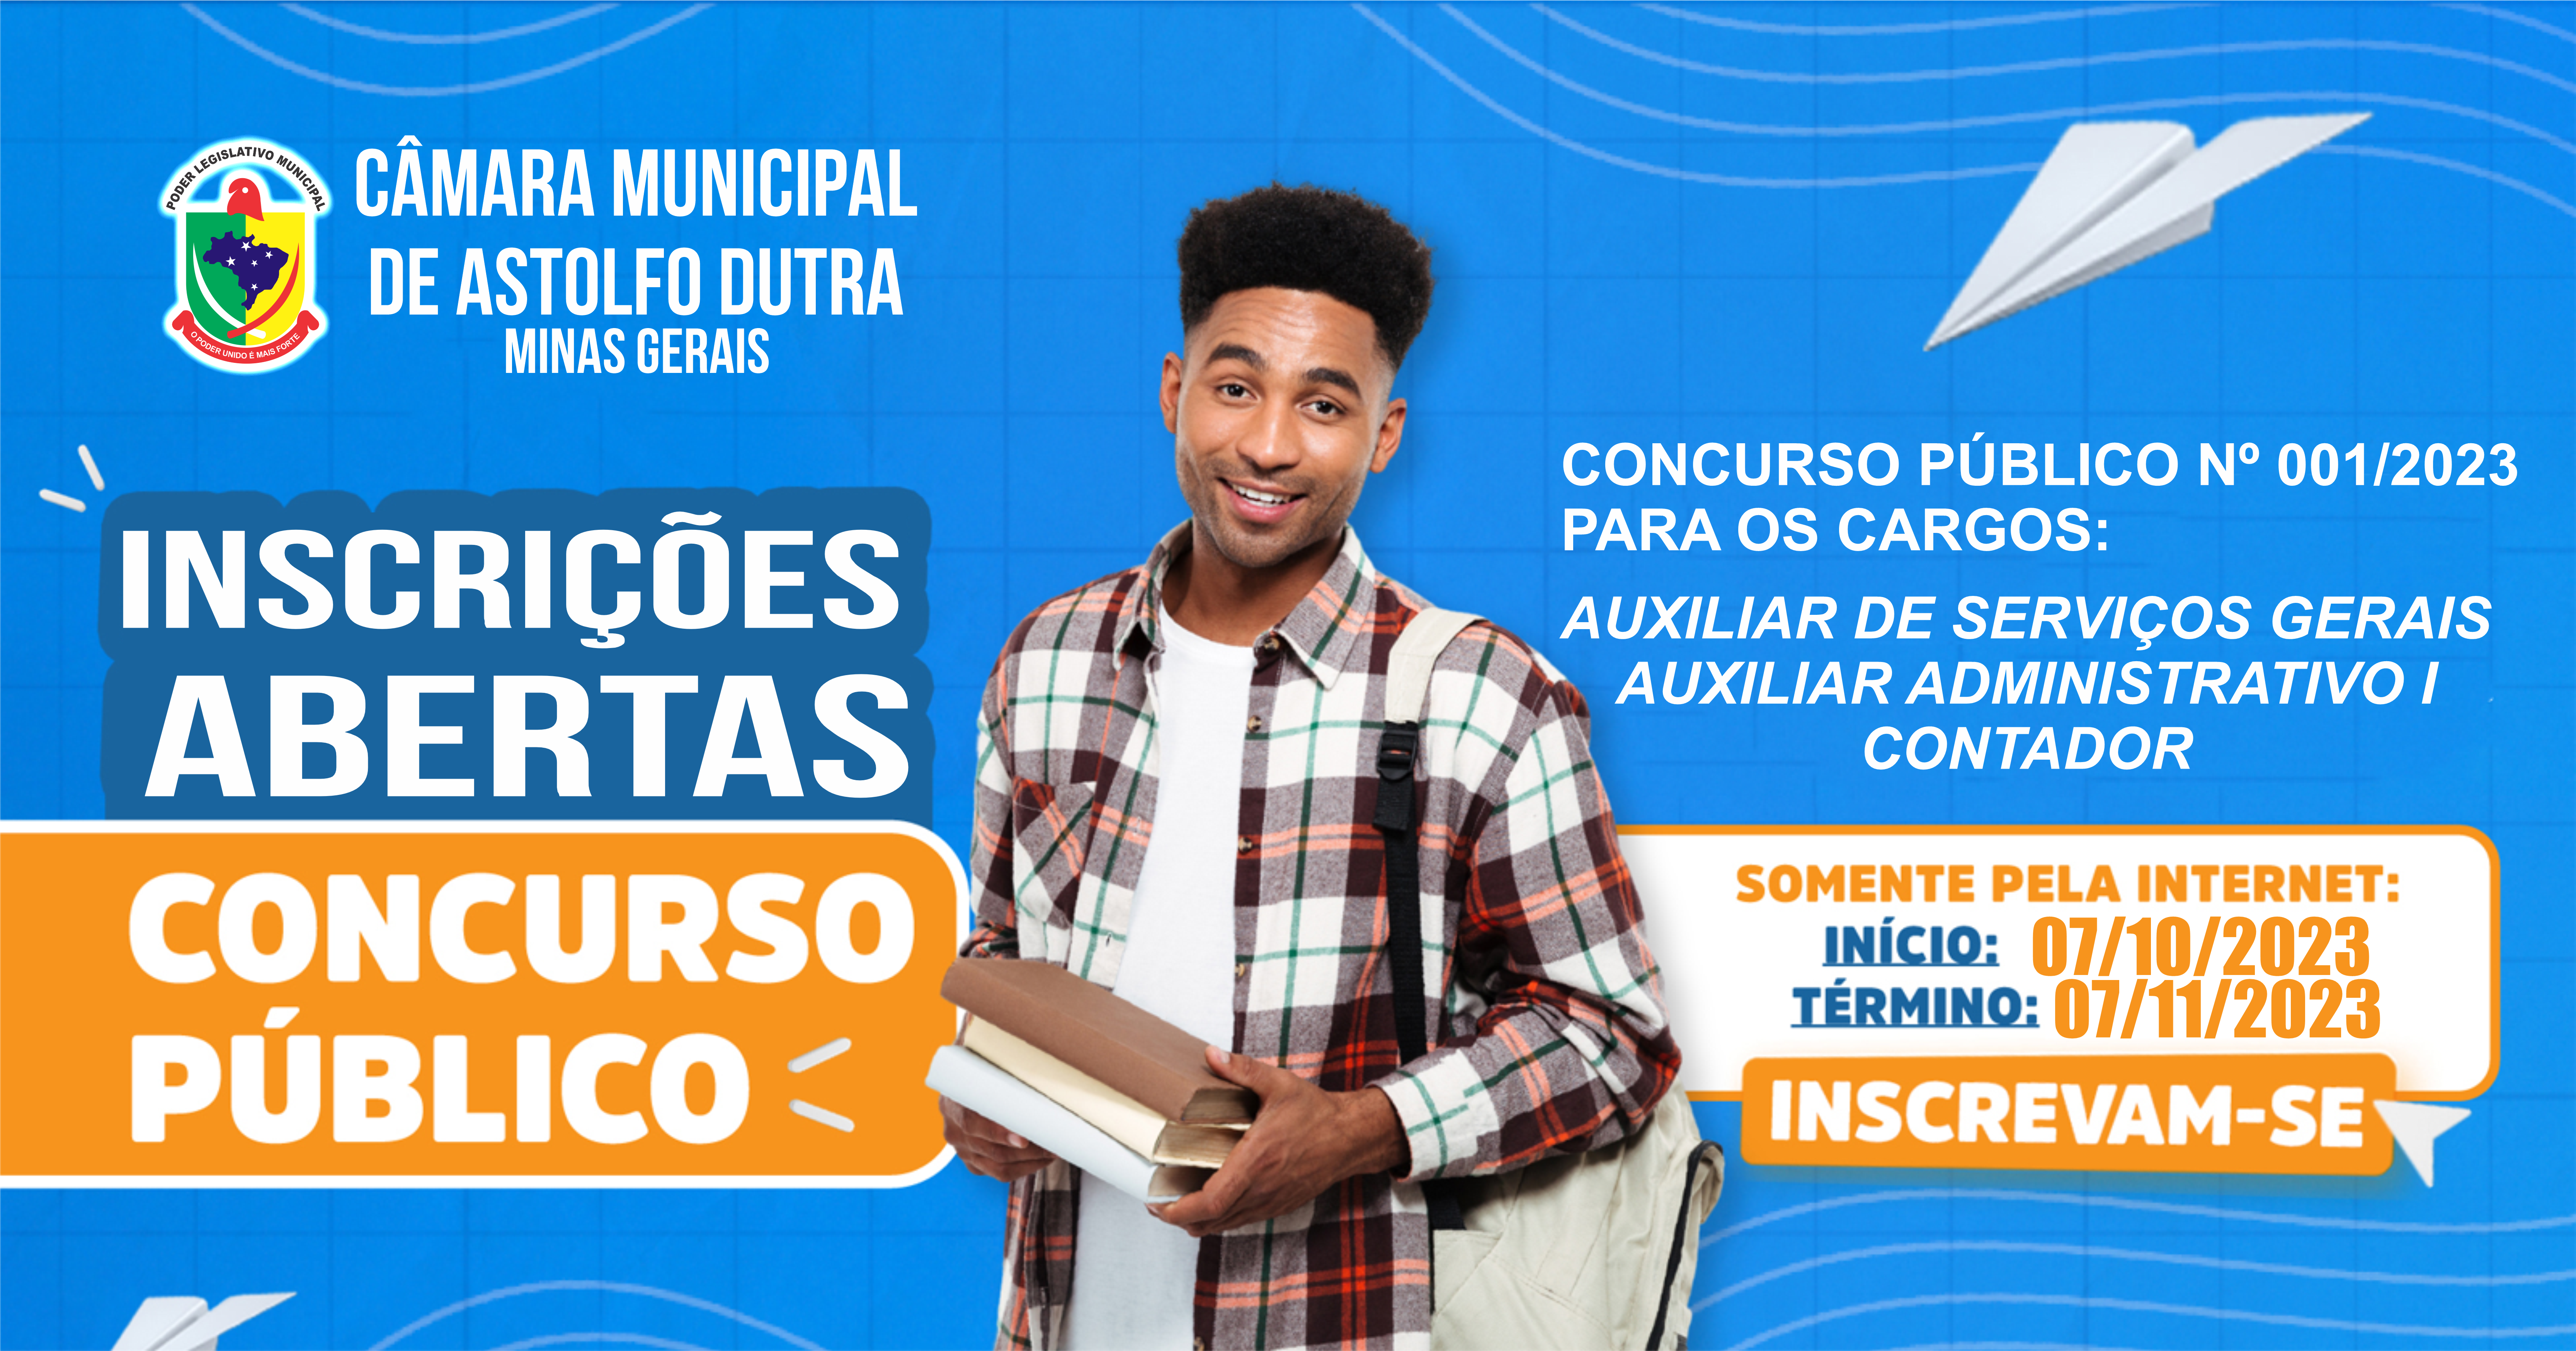 Inscrições aberta do Concurso Público - 001.2023 - CÂMARA MUNICIPAL DE ASTOLFO DUTRA - MG